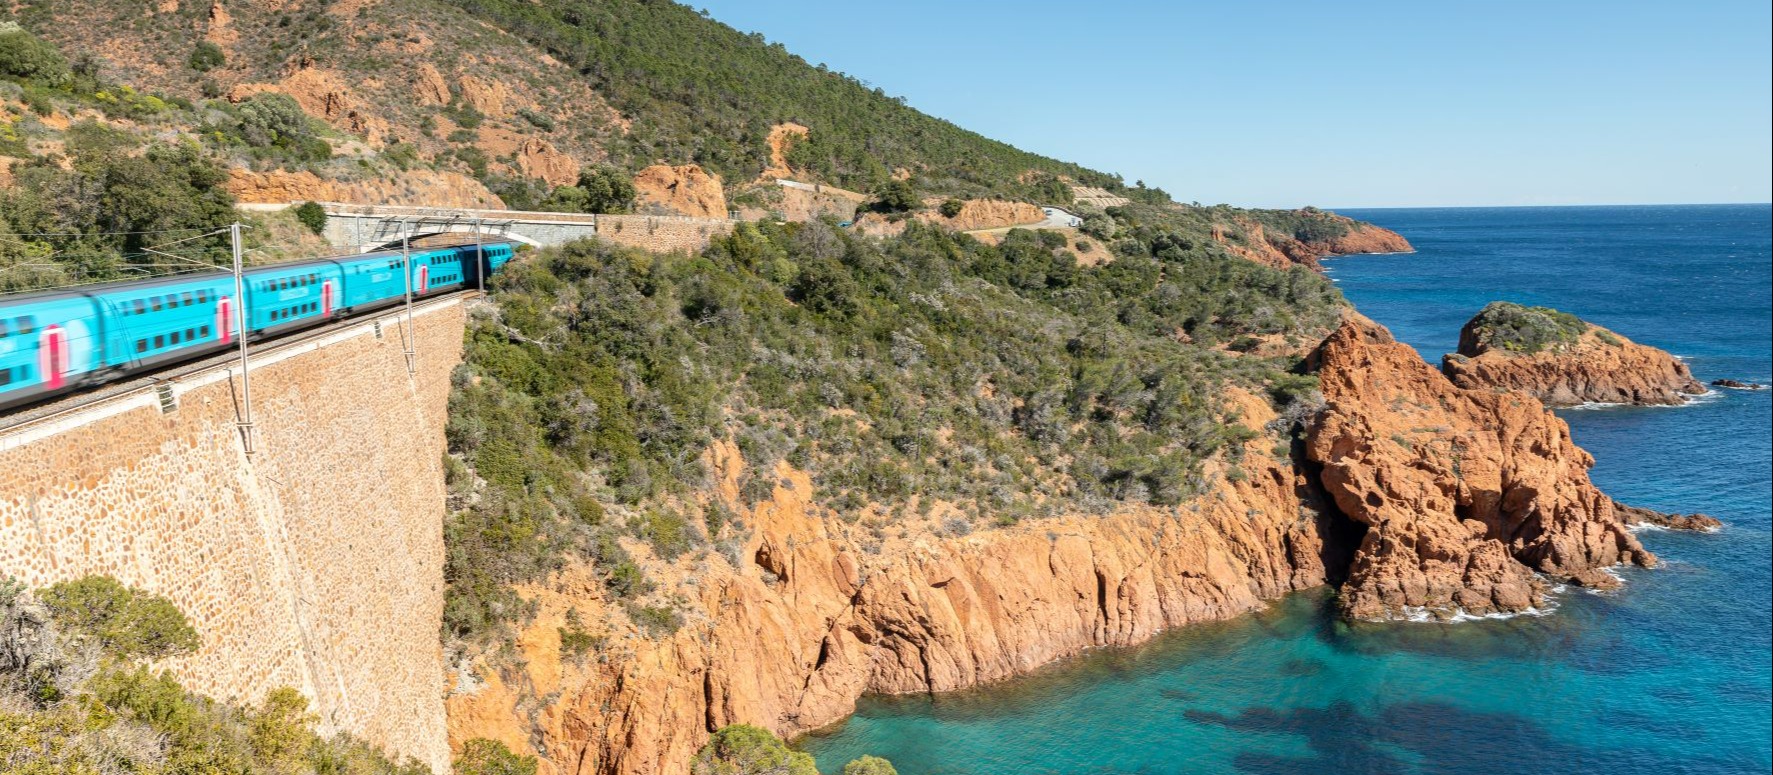 Paysages et éco-systèmes Corse entre mer et montagne - Tourisme en